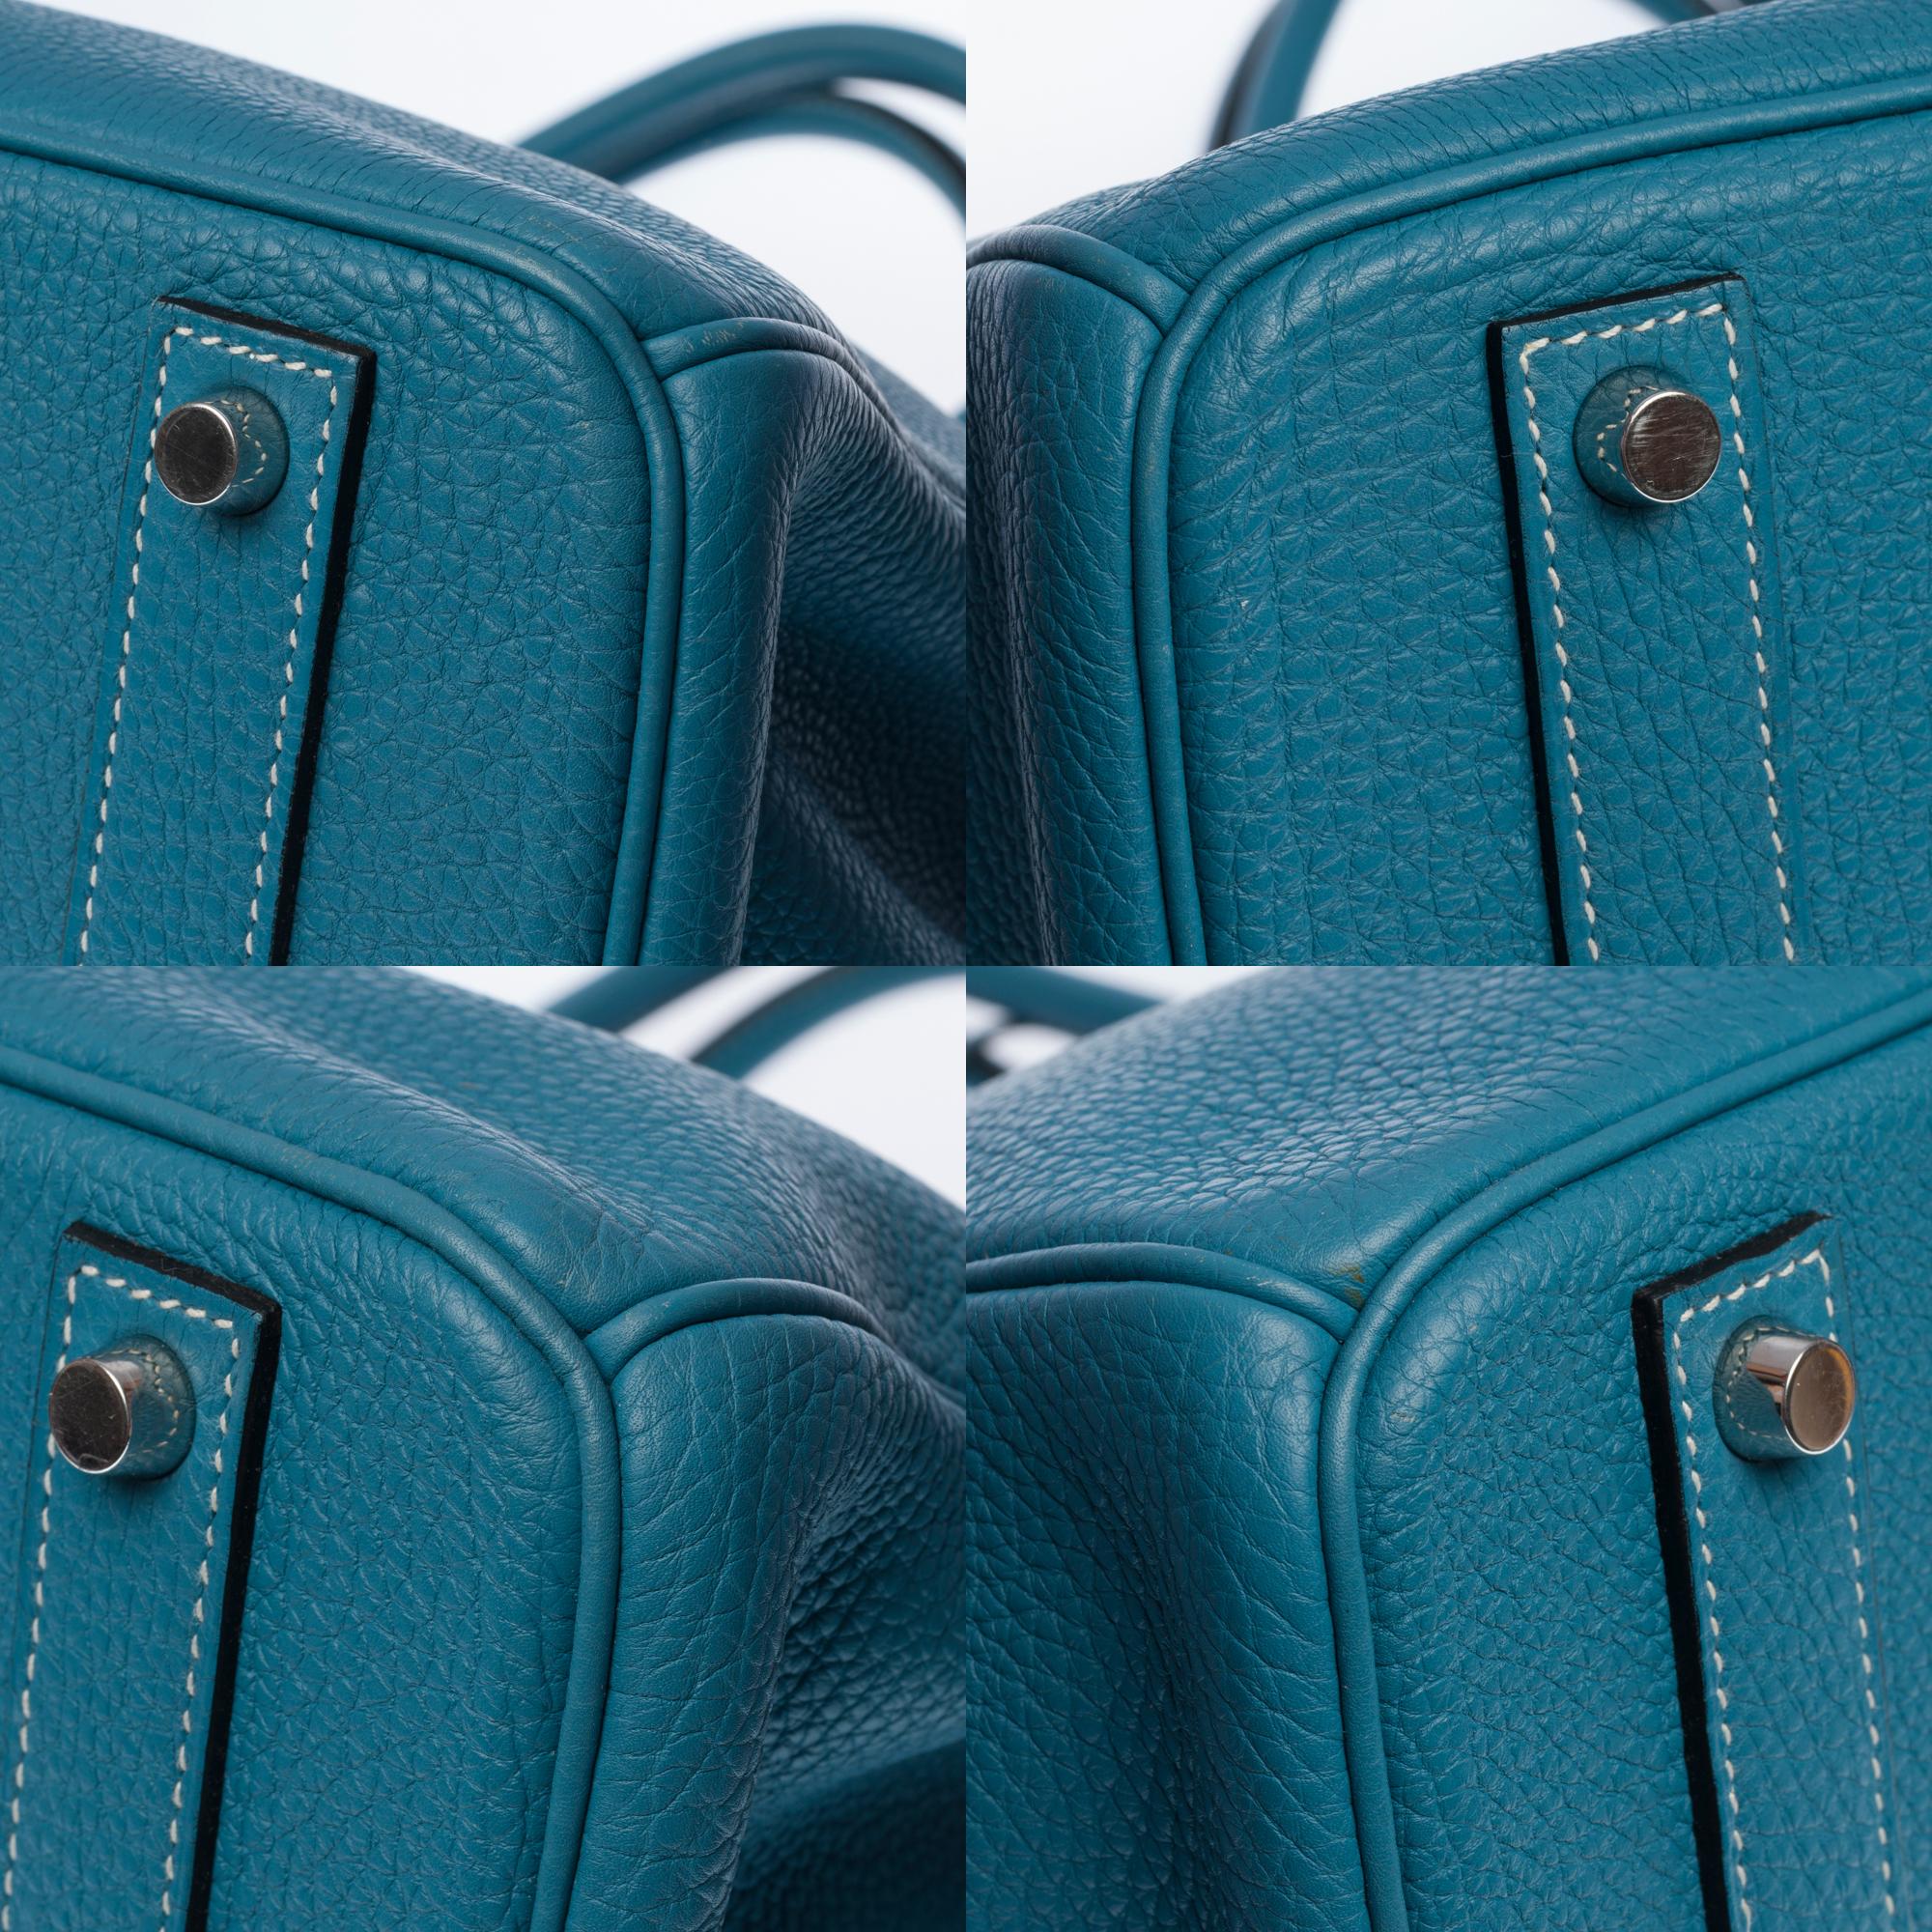 Stunning Hermes Birkin 40cm handbag in Blue Pétrole Togo leather, SHW 6